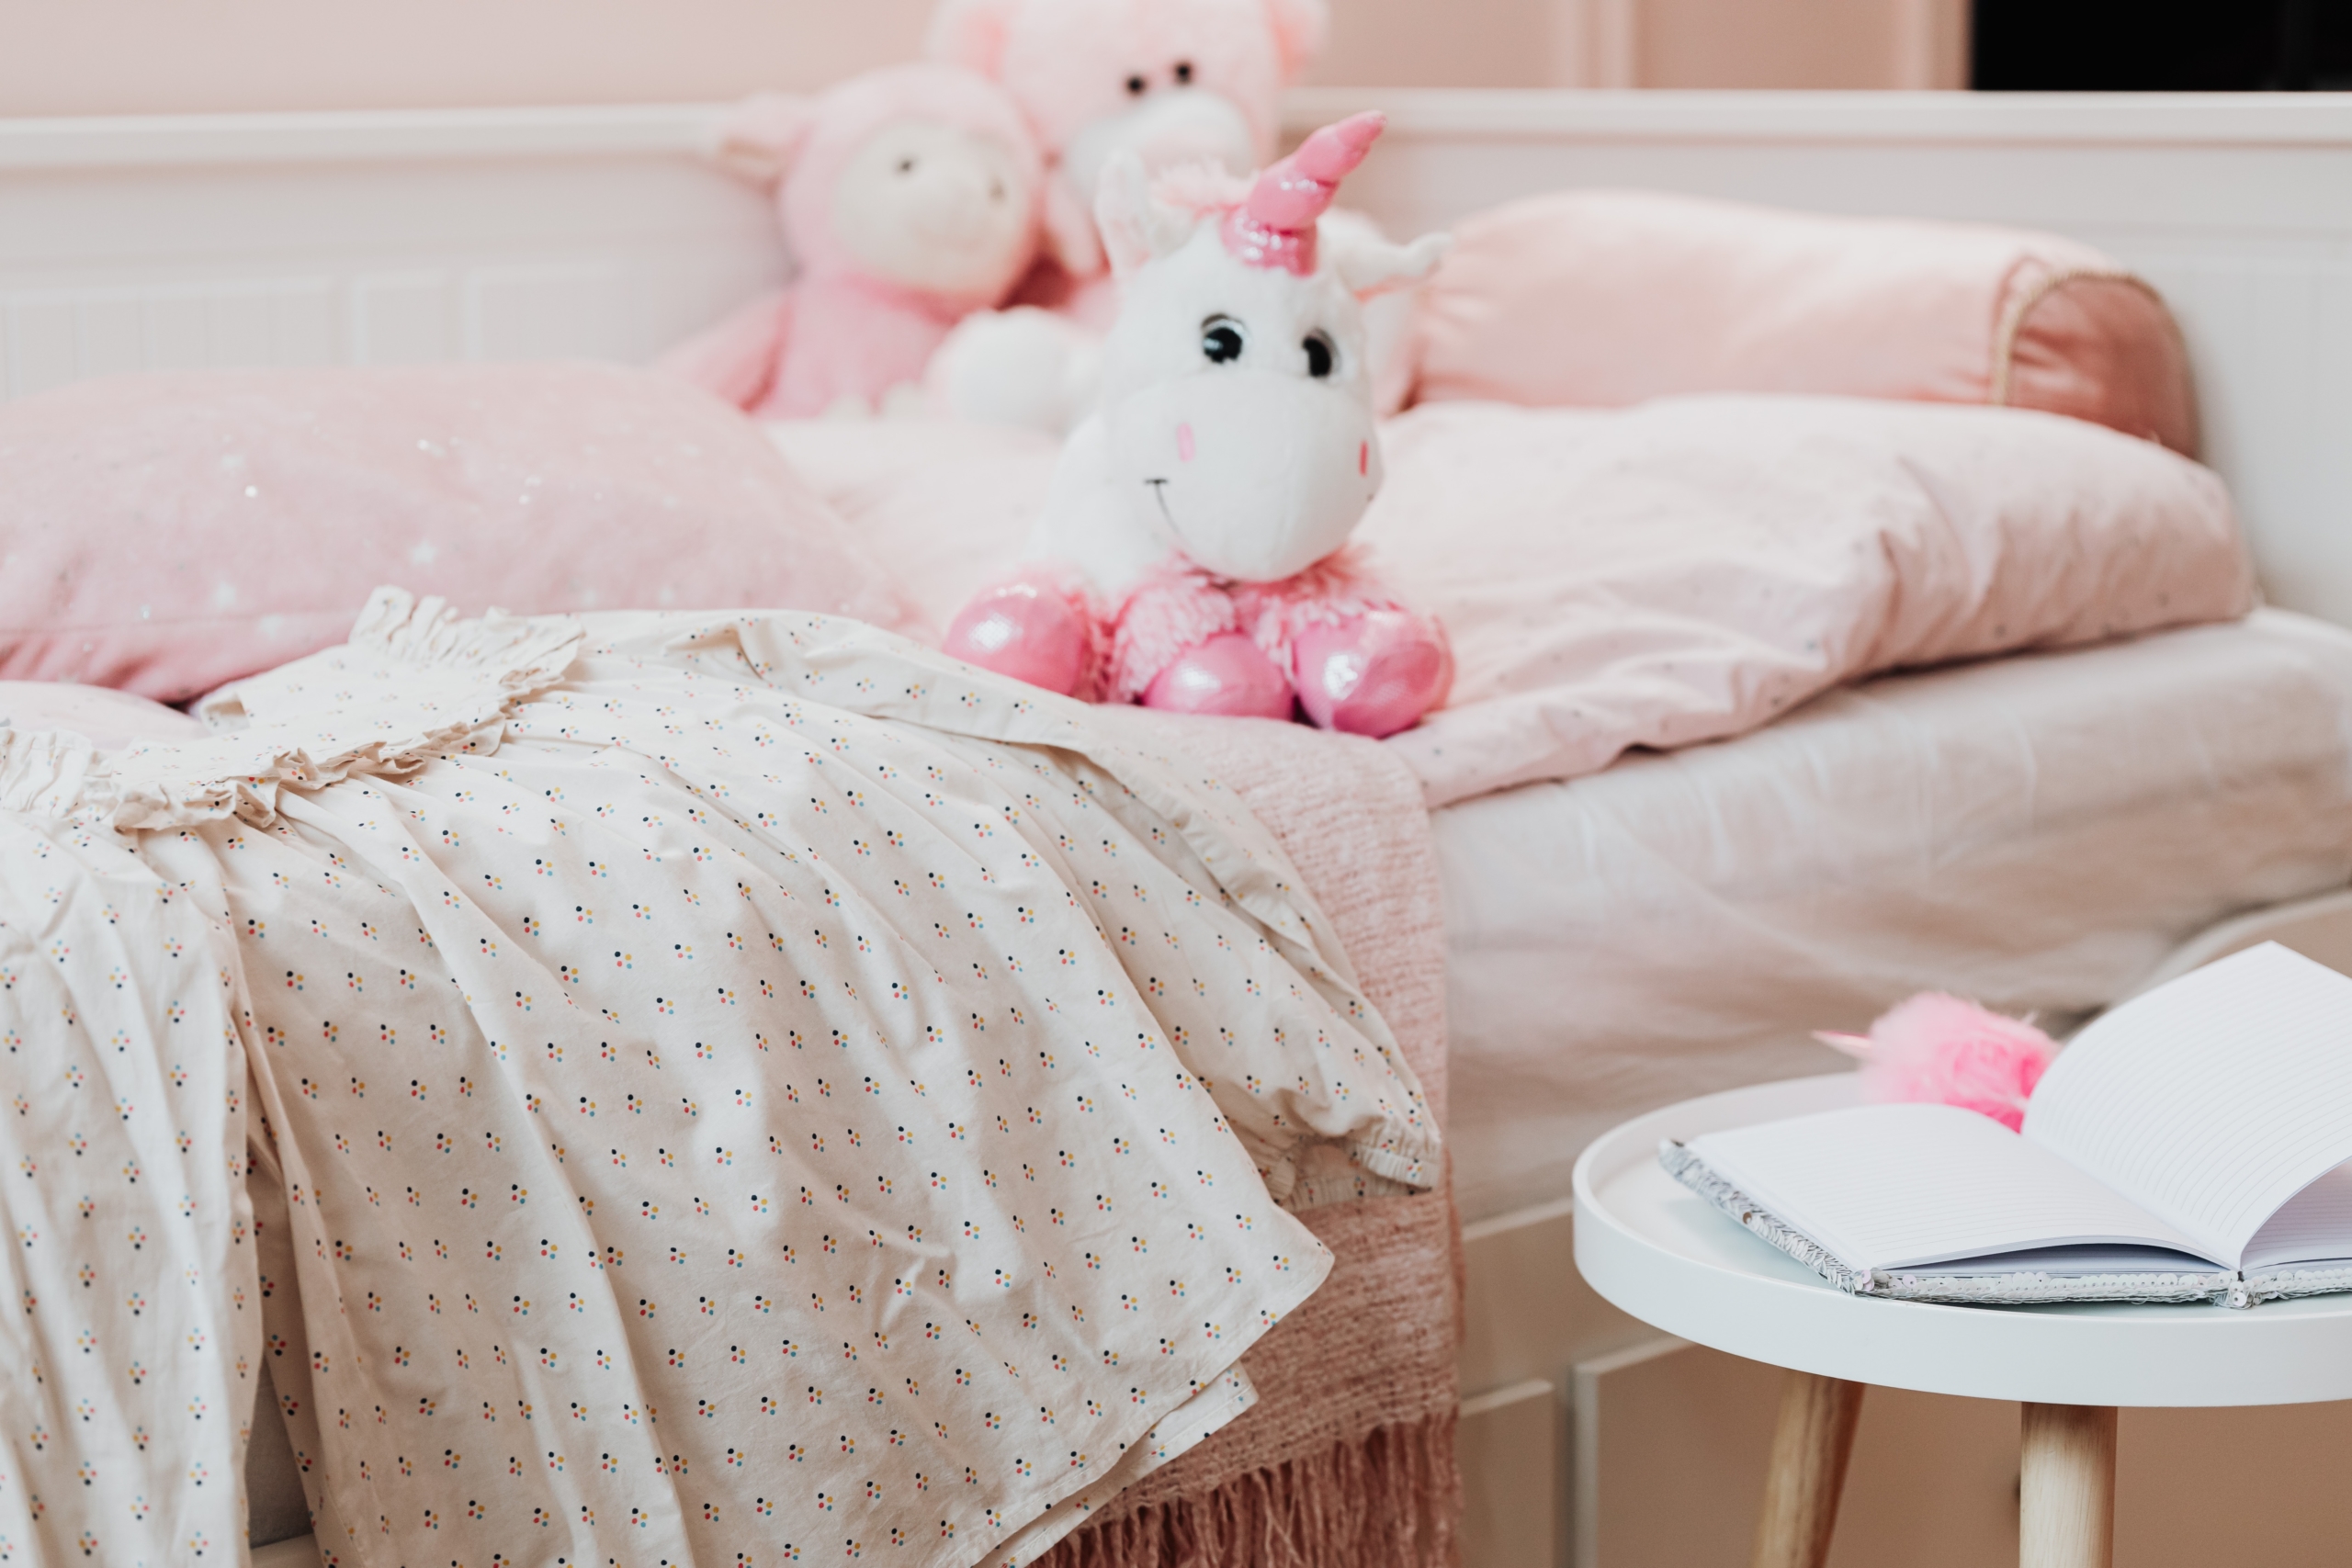 Plüscheinhorn auf einem rosa Kinderbett